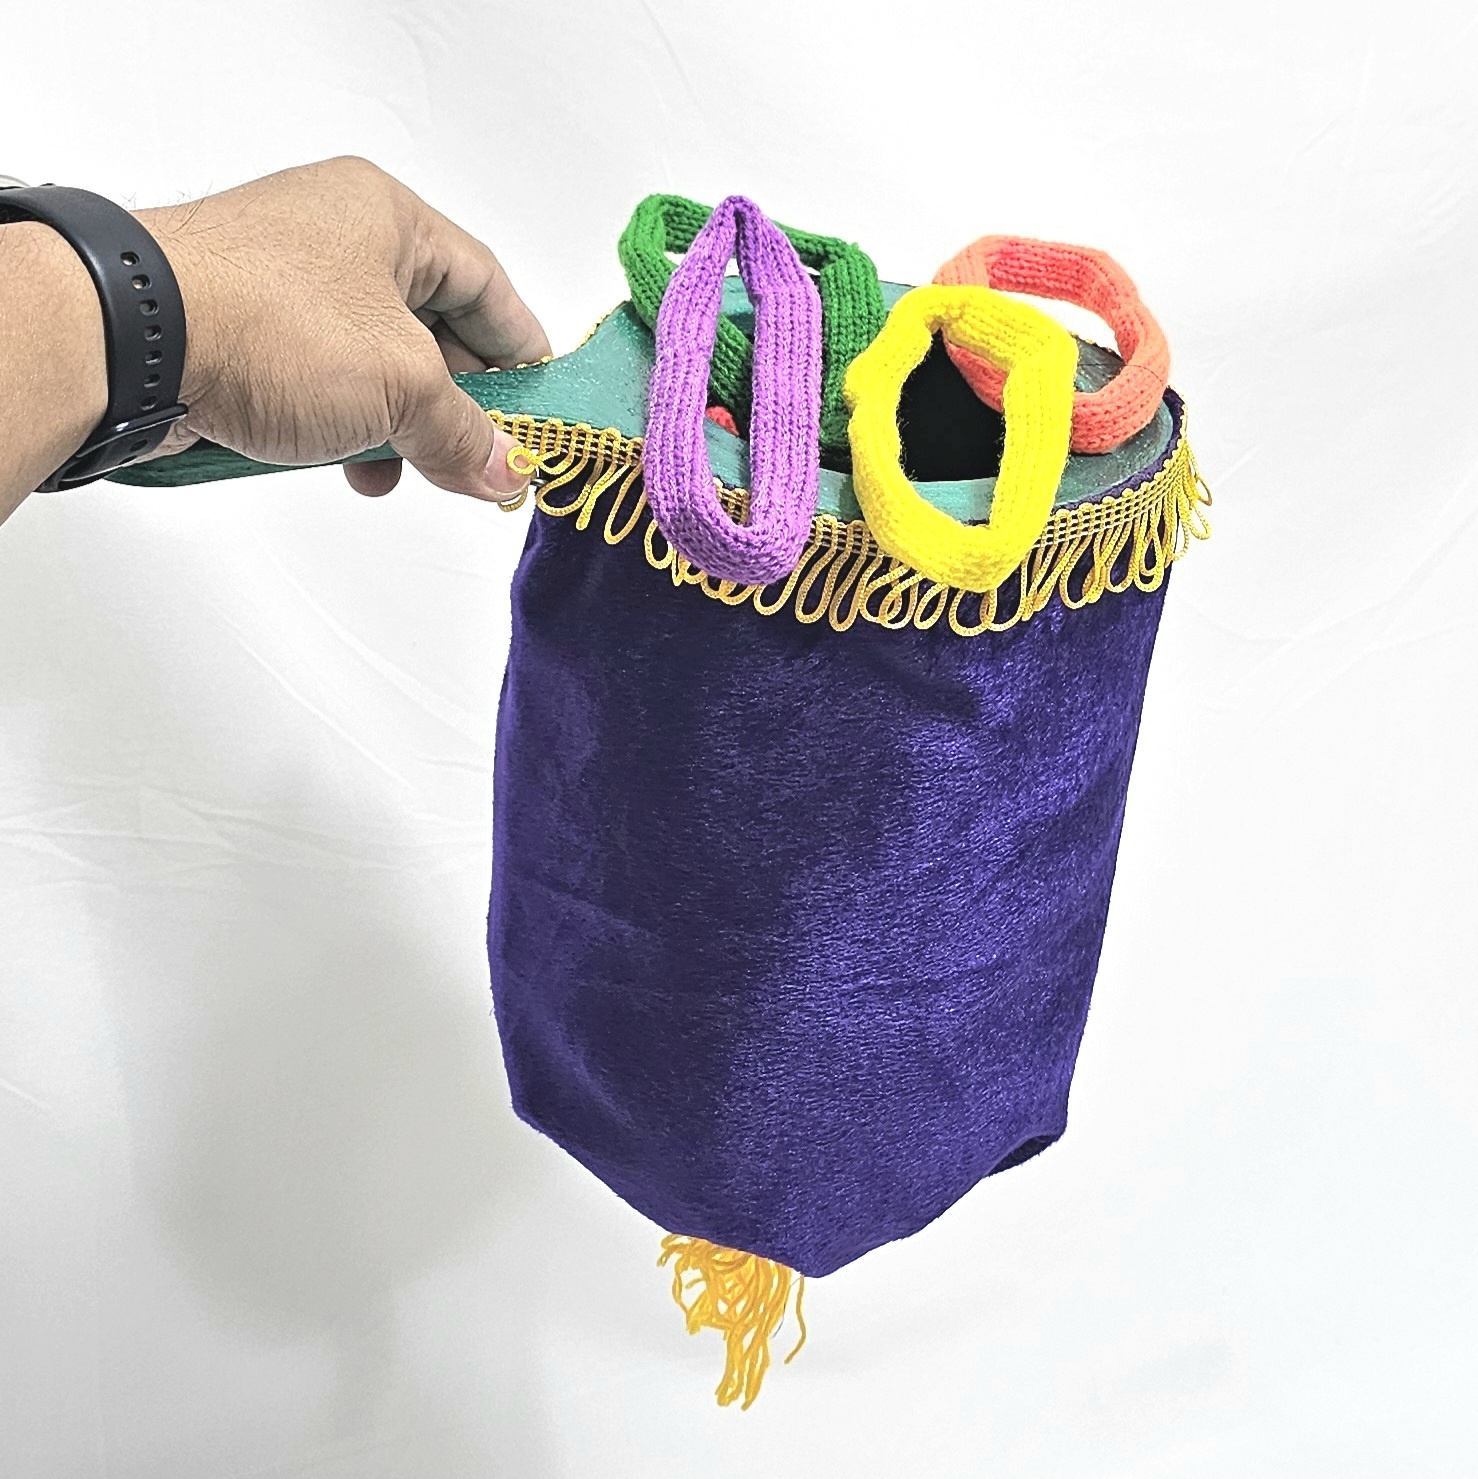 레인보우매듭만들기 (체인지주머니포함:랜덤컬러) RAINBOW ROPE SET( with Change Bag Random Color)레인보우매듭만들기 (체인지주머니포함:랜덤컬러) RAINBOW ROPE SET( with Change Bag Random Color)